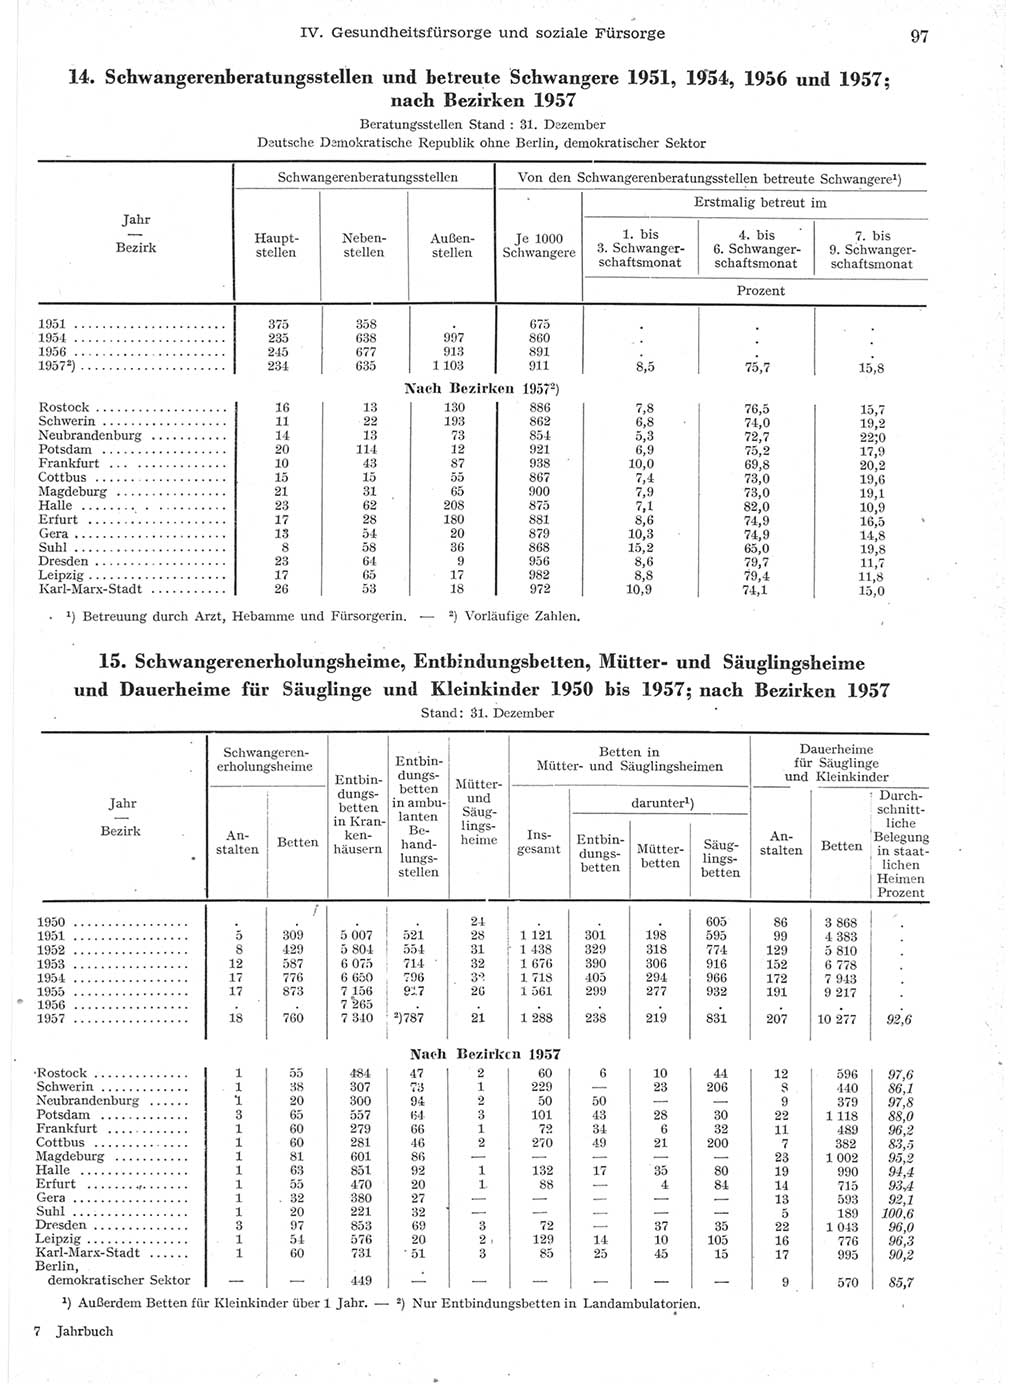 Statistisches Jahrbuch der Deutschen Demokratischen Republik (DDR) 1957, Seite 97 (Stat. Jb. DDR 1957, S. 97)